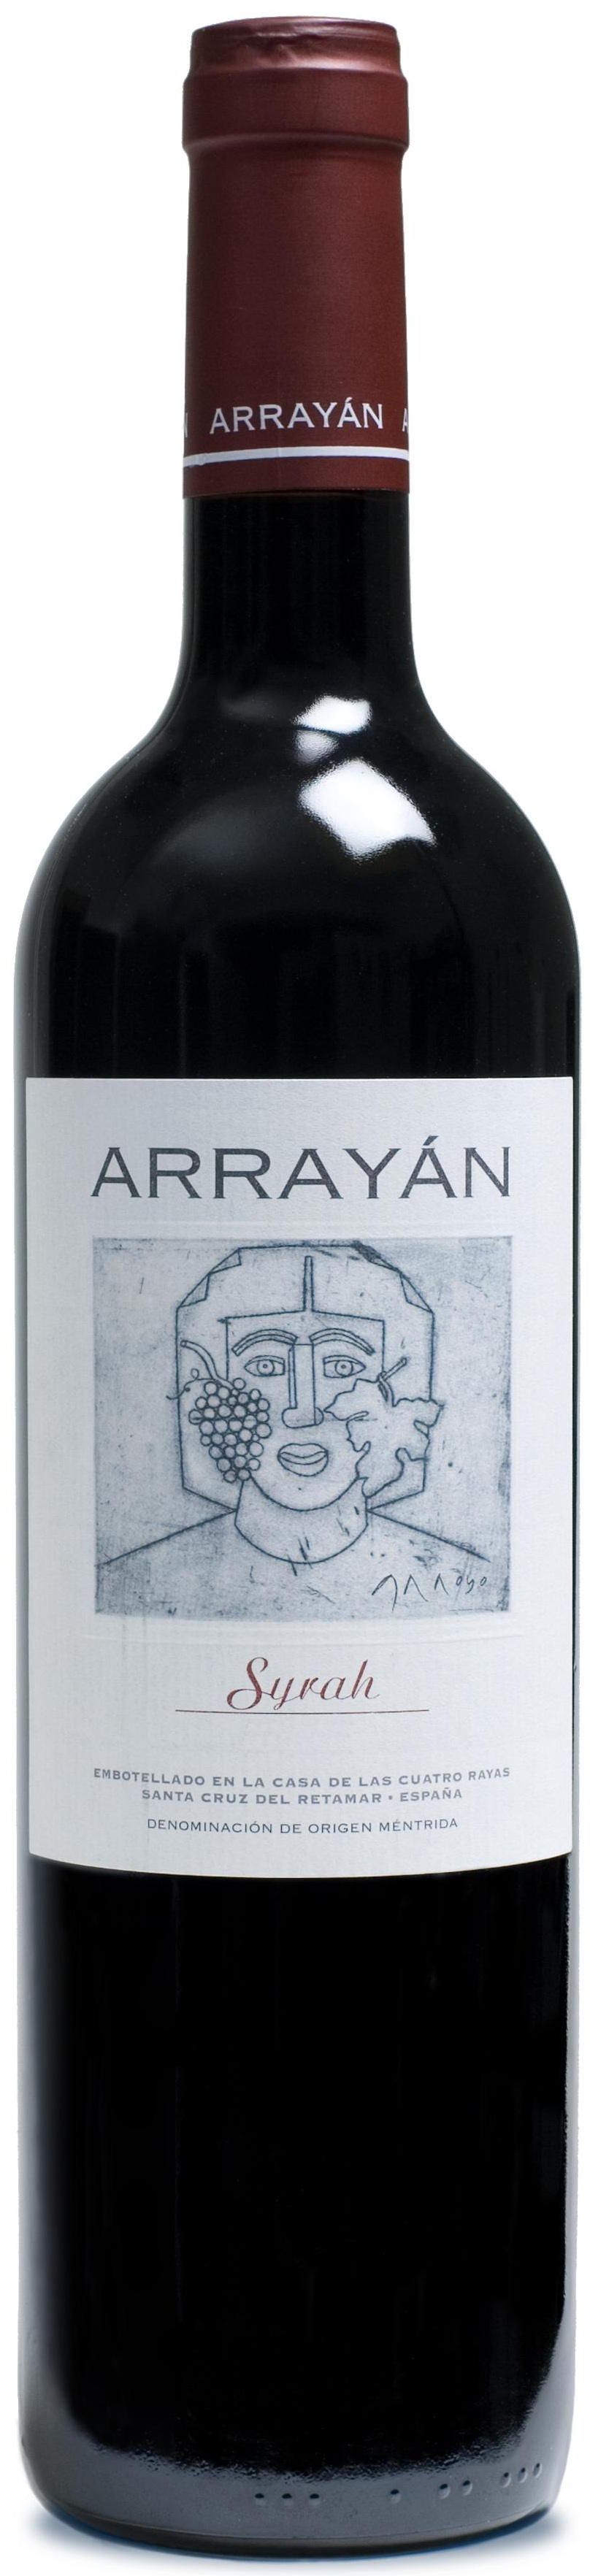 Imagen de la botella de Vino Arrayán Syrah